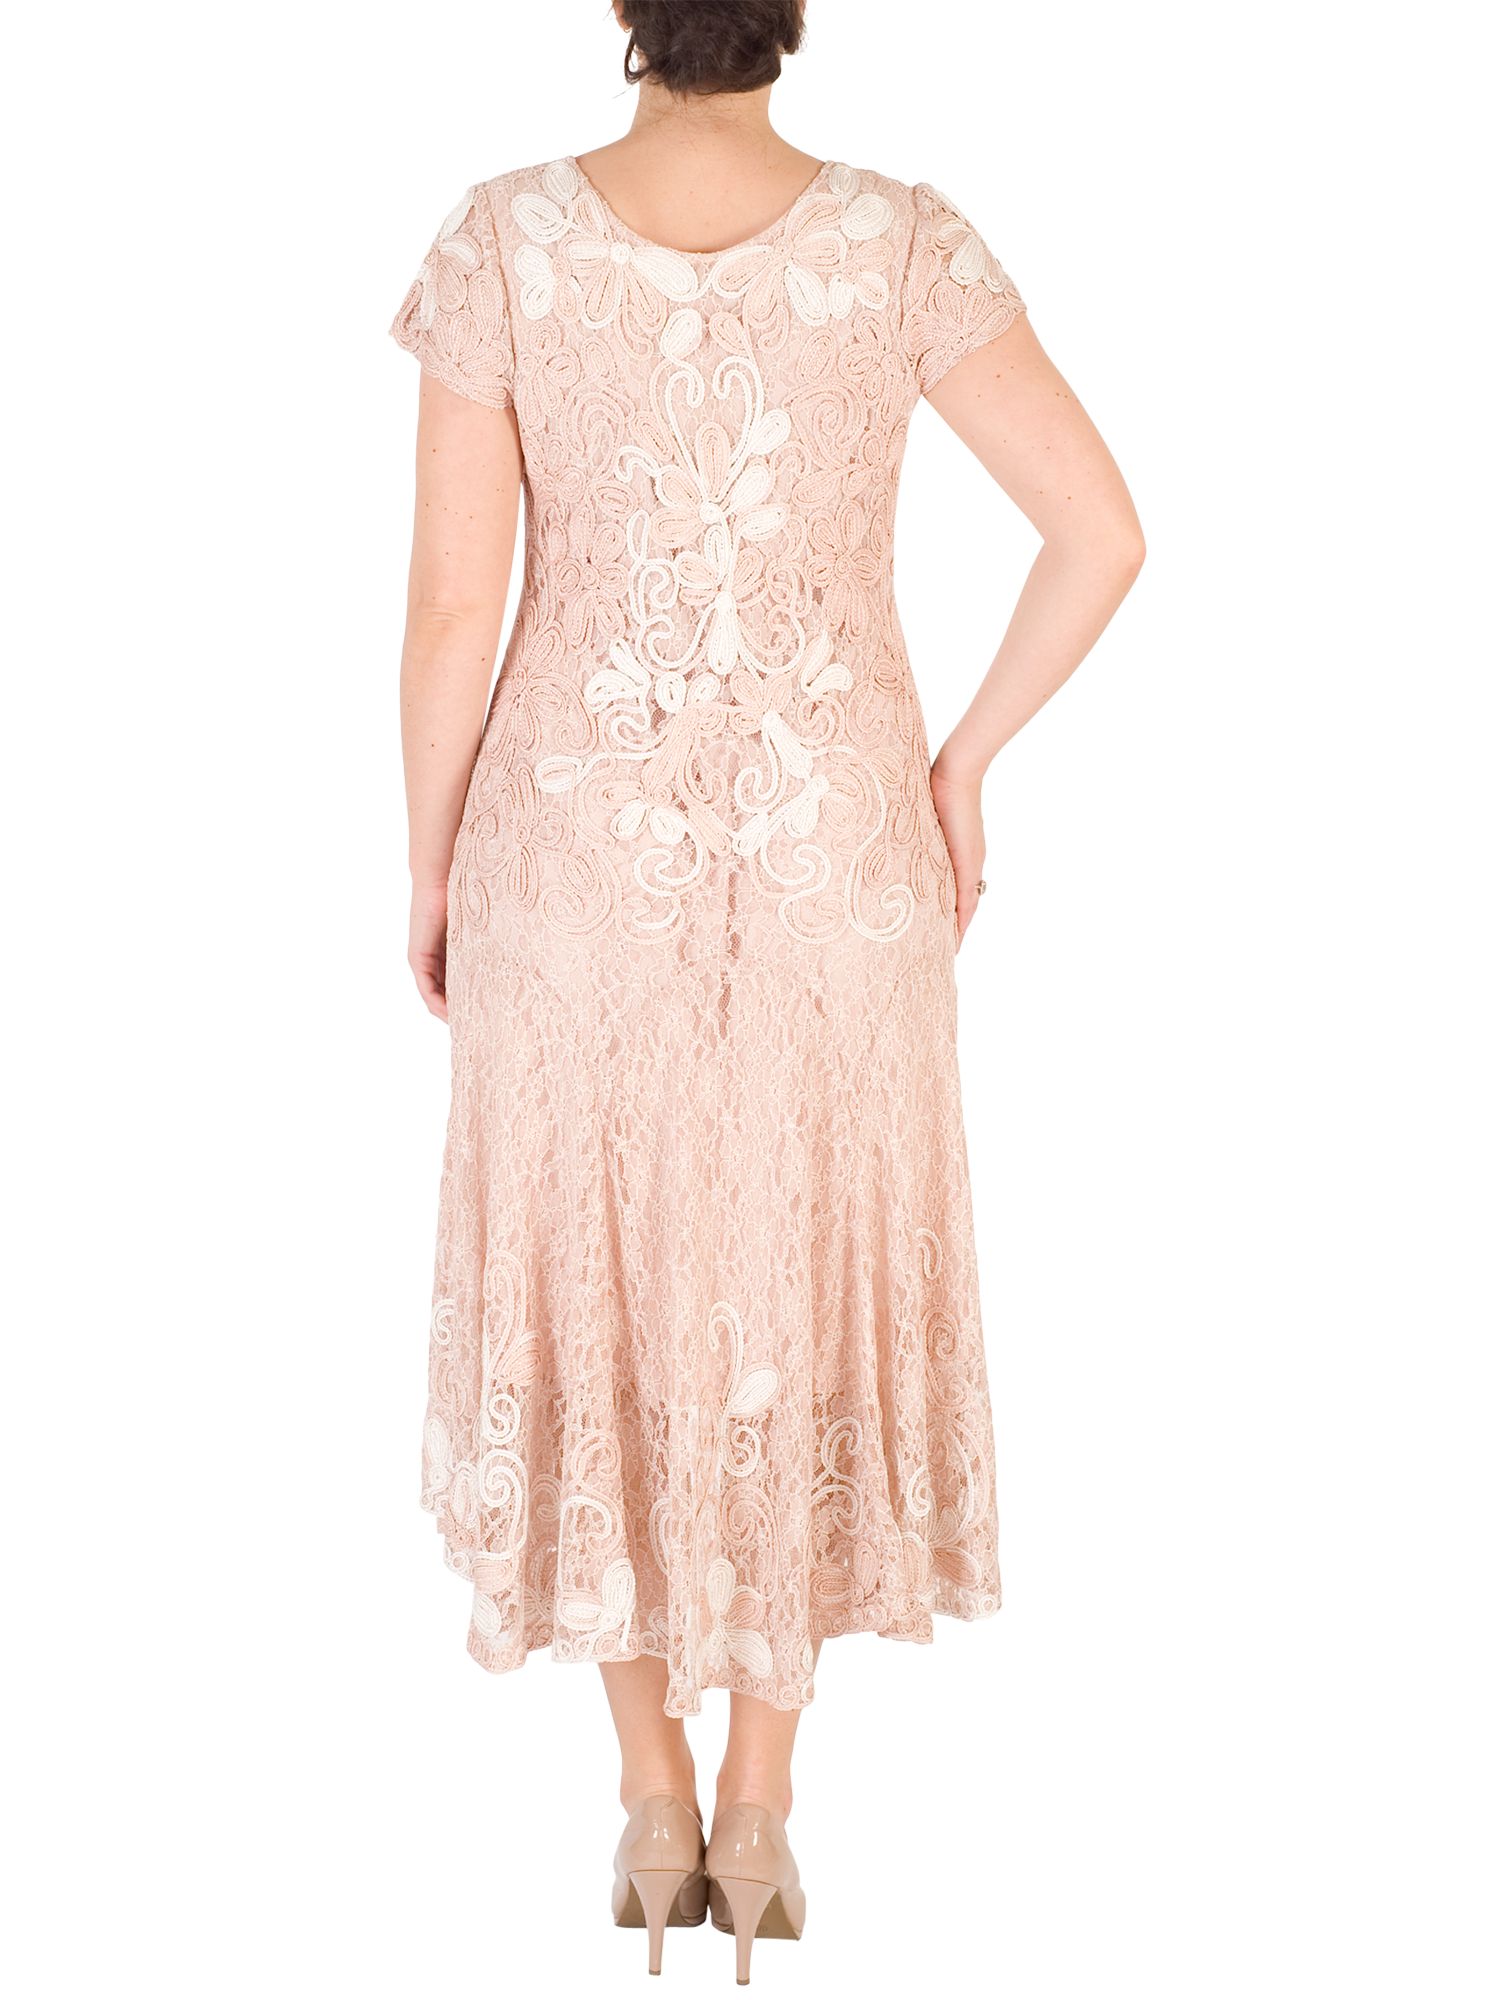 Chesca Ombre Cornelli Lace Dress, Blush/Ivory, 12